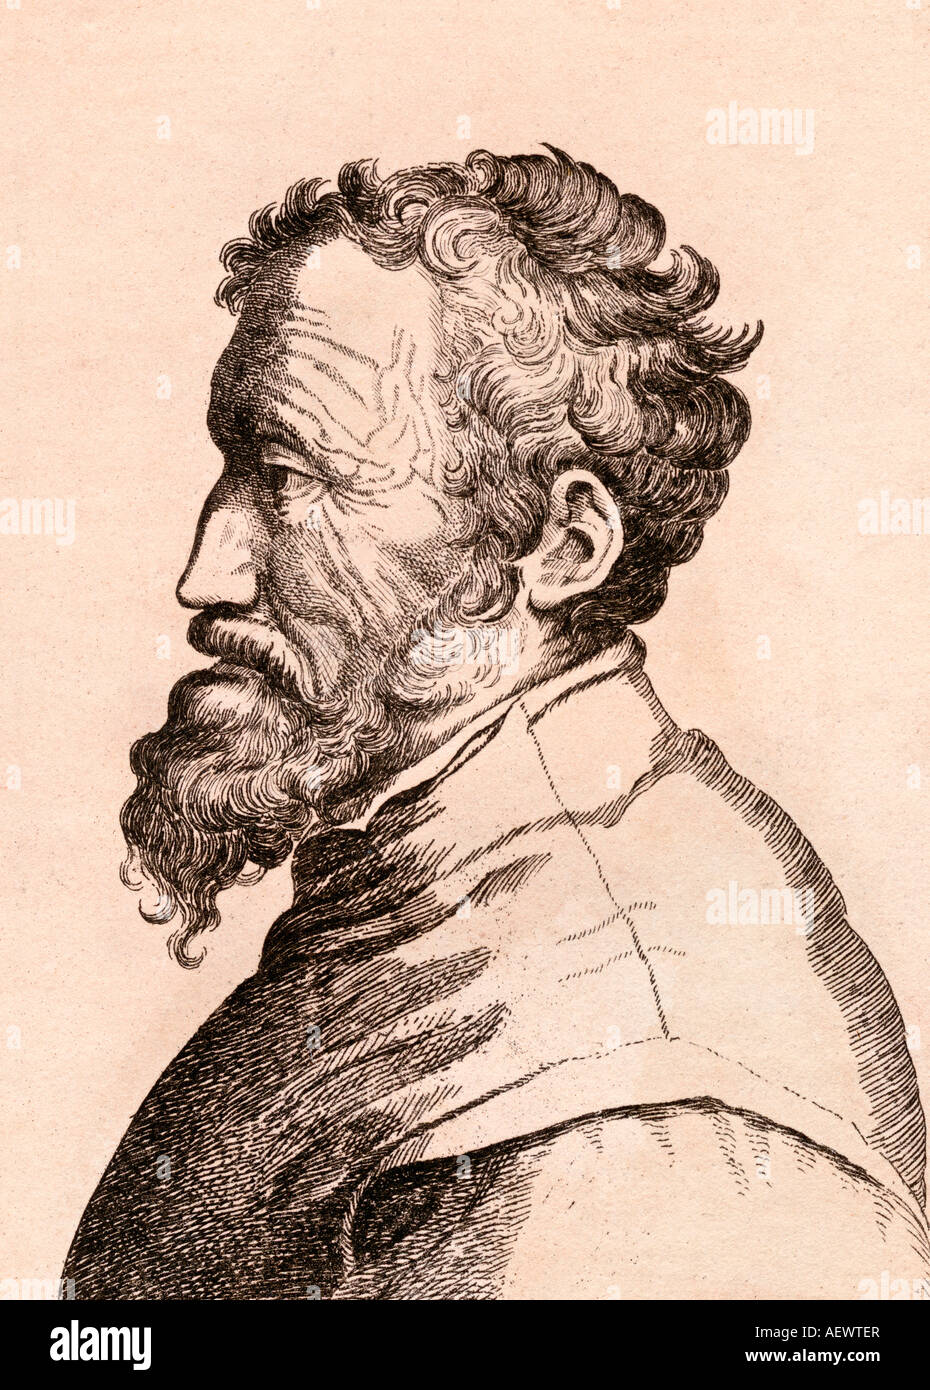 Michelangelo di Lodovico Buonarroti Simoni, 1475 – 1564, italienischer Bildhauer, Maler, Architekt und Dichter der Hochrenaissance. Stockfoto